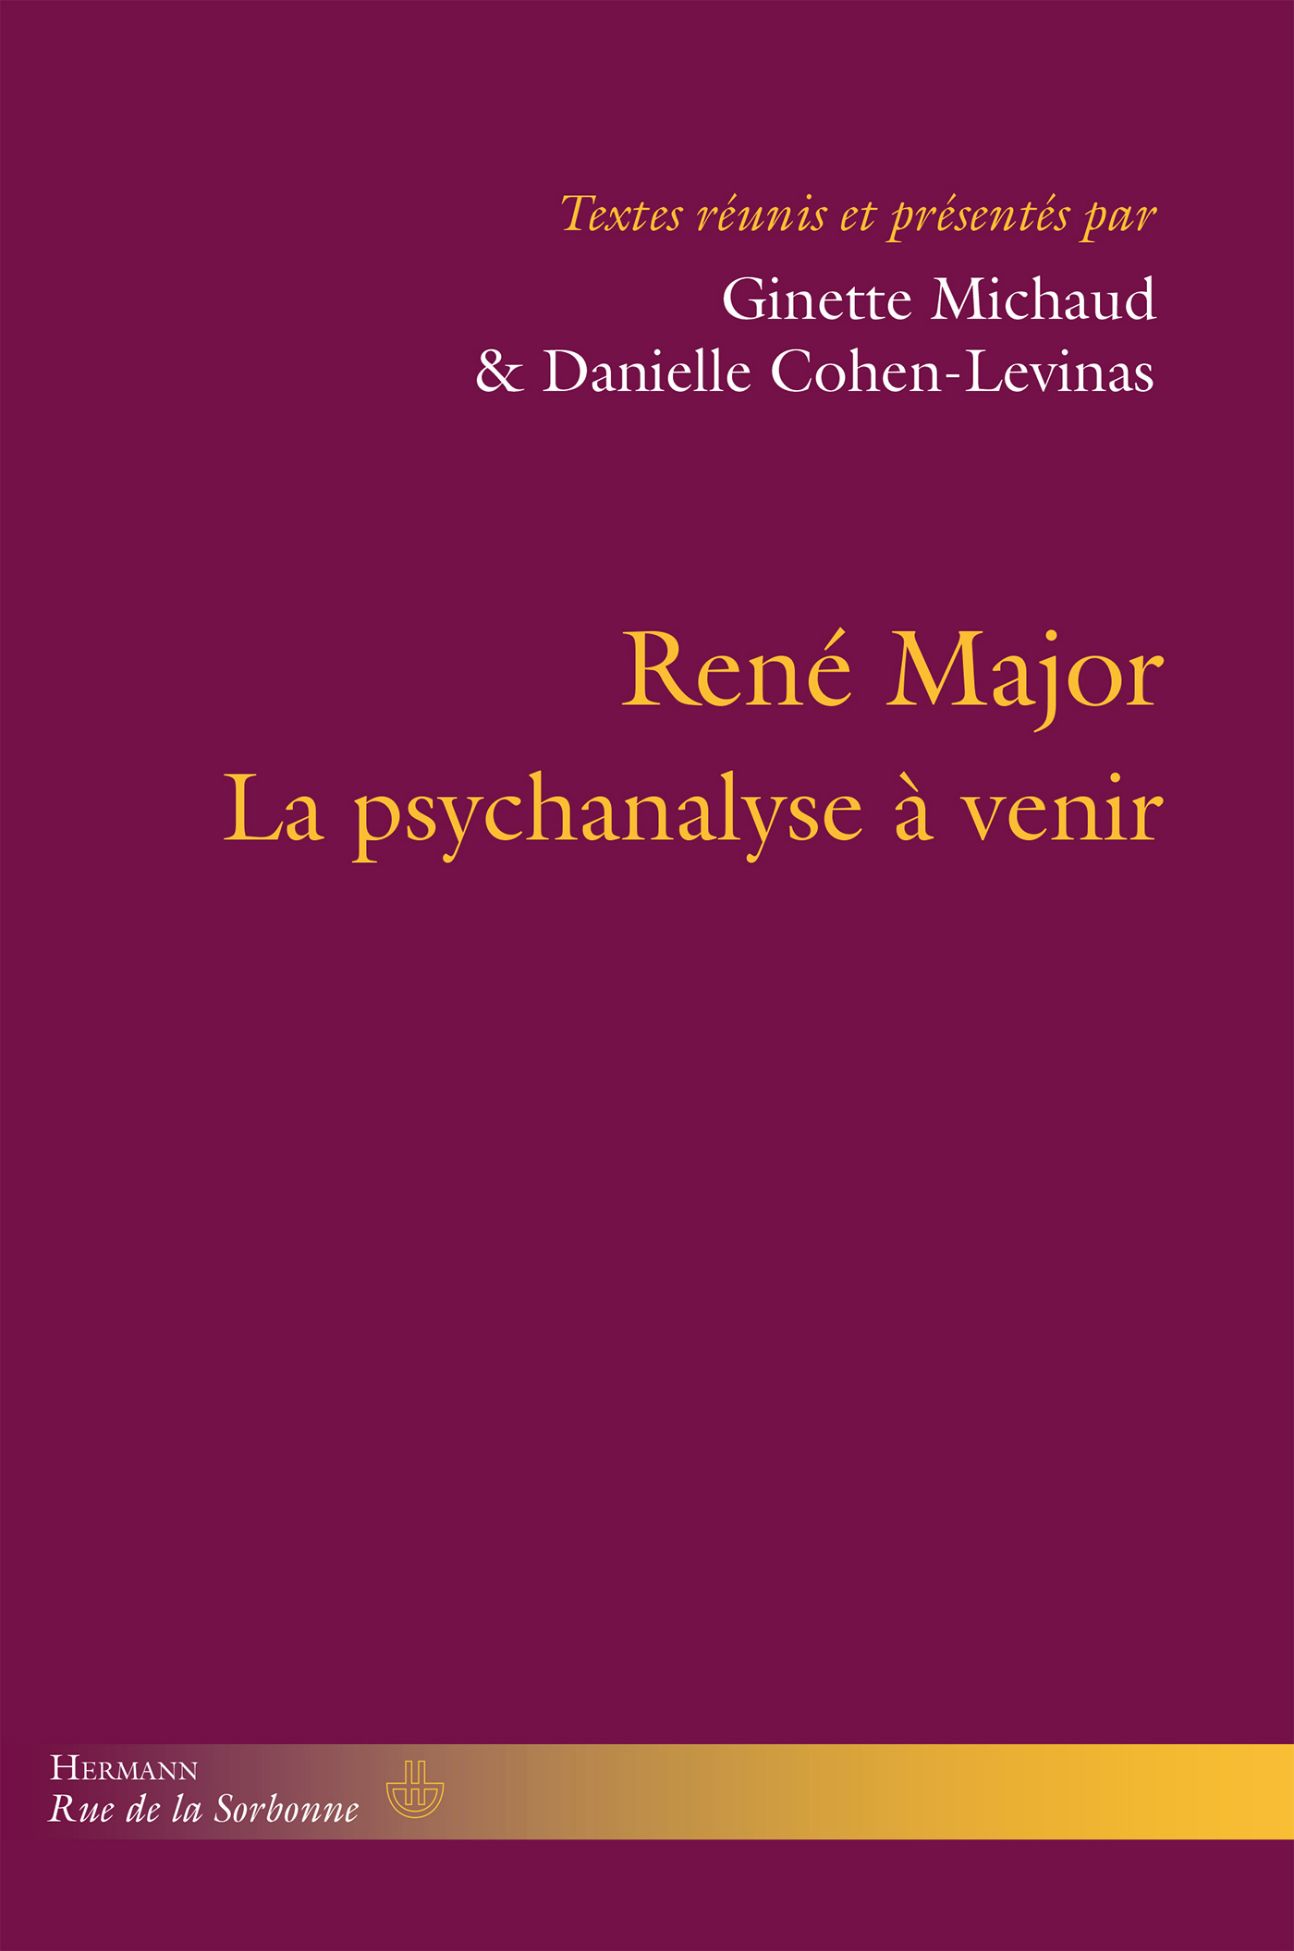 Danielle Cohen-Levinas & Ginette Michaud (dir.), René Major. La psychanalyse à venir